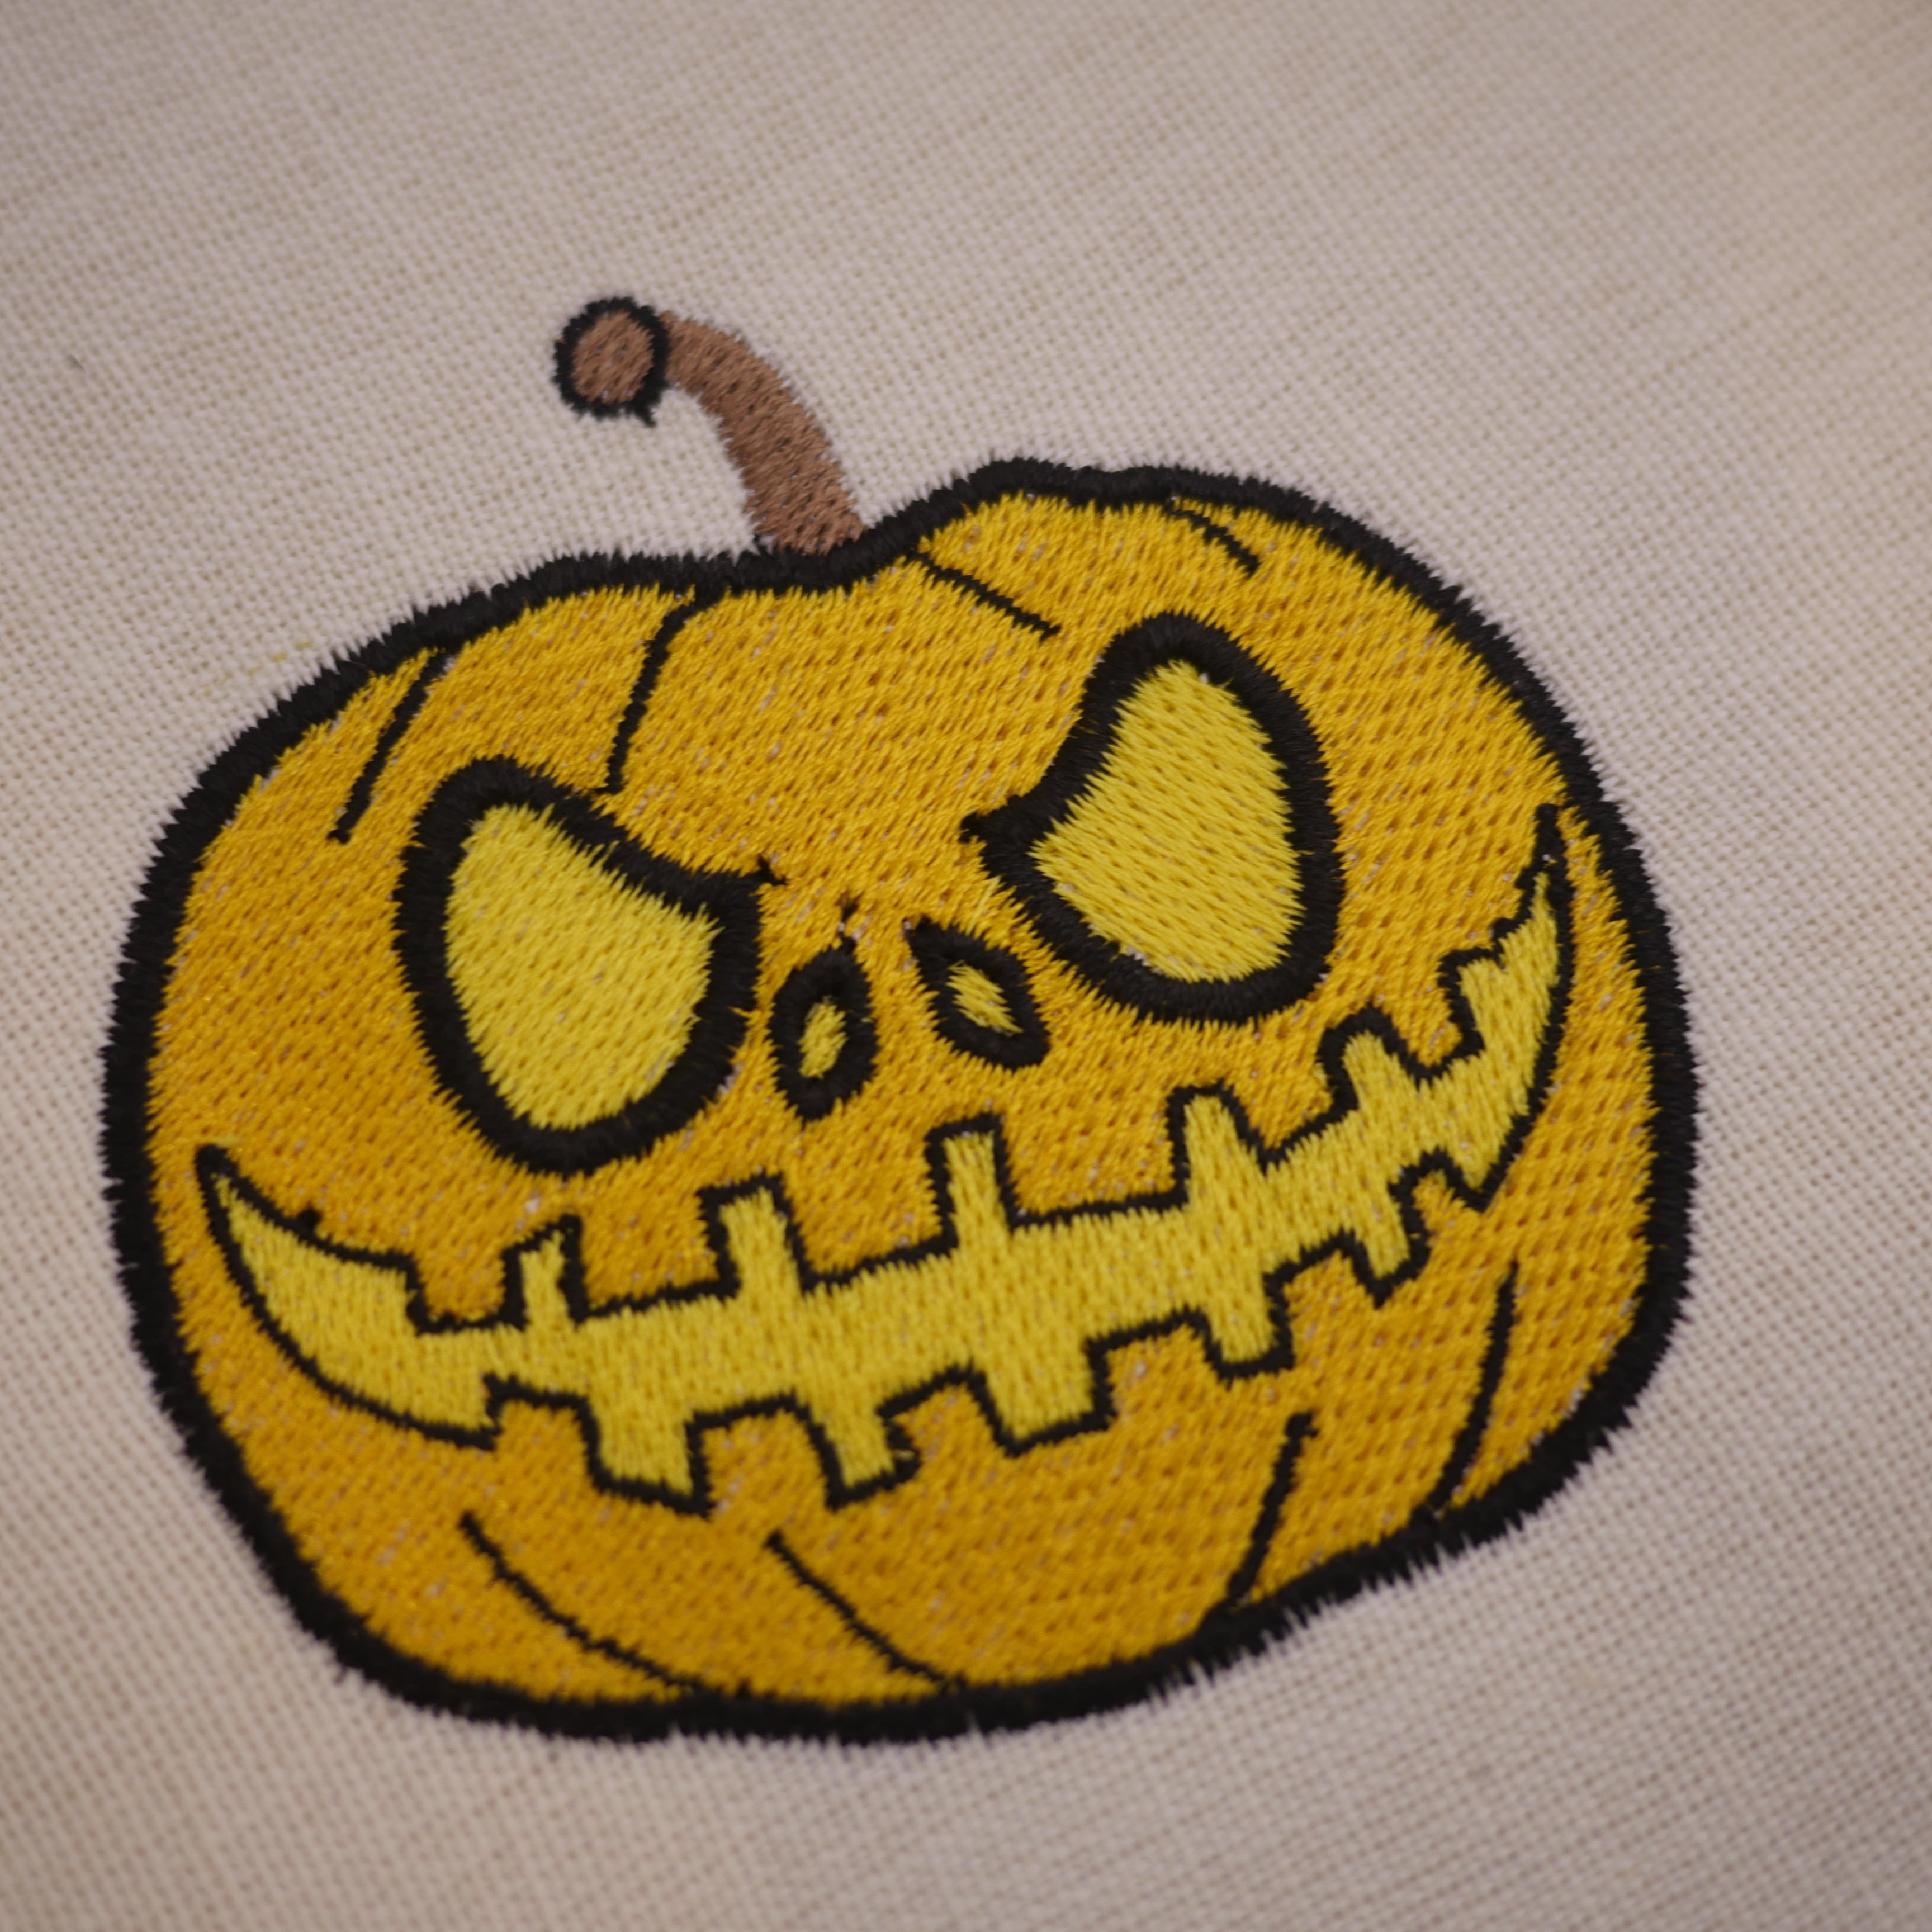 Halloween Pumpkin Embroidery Design